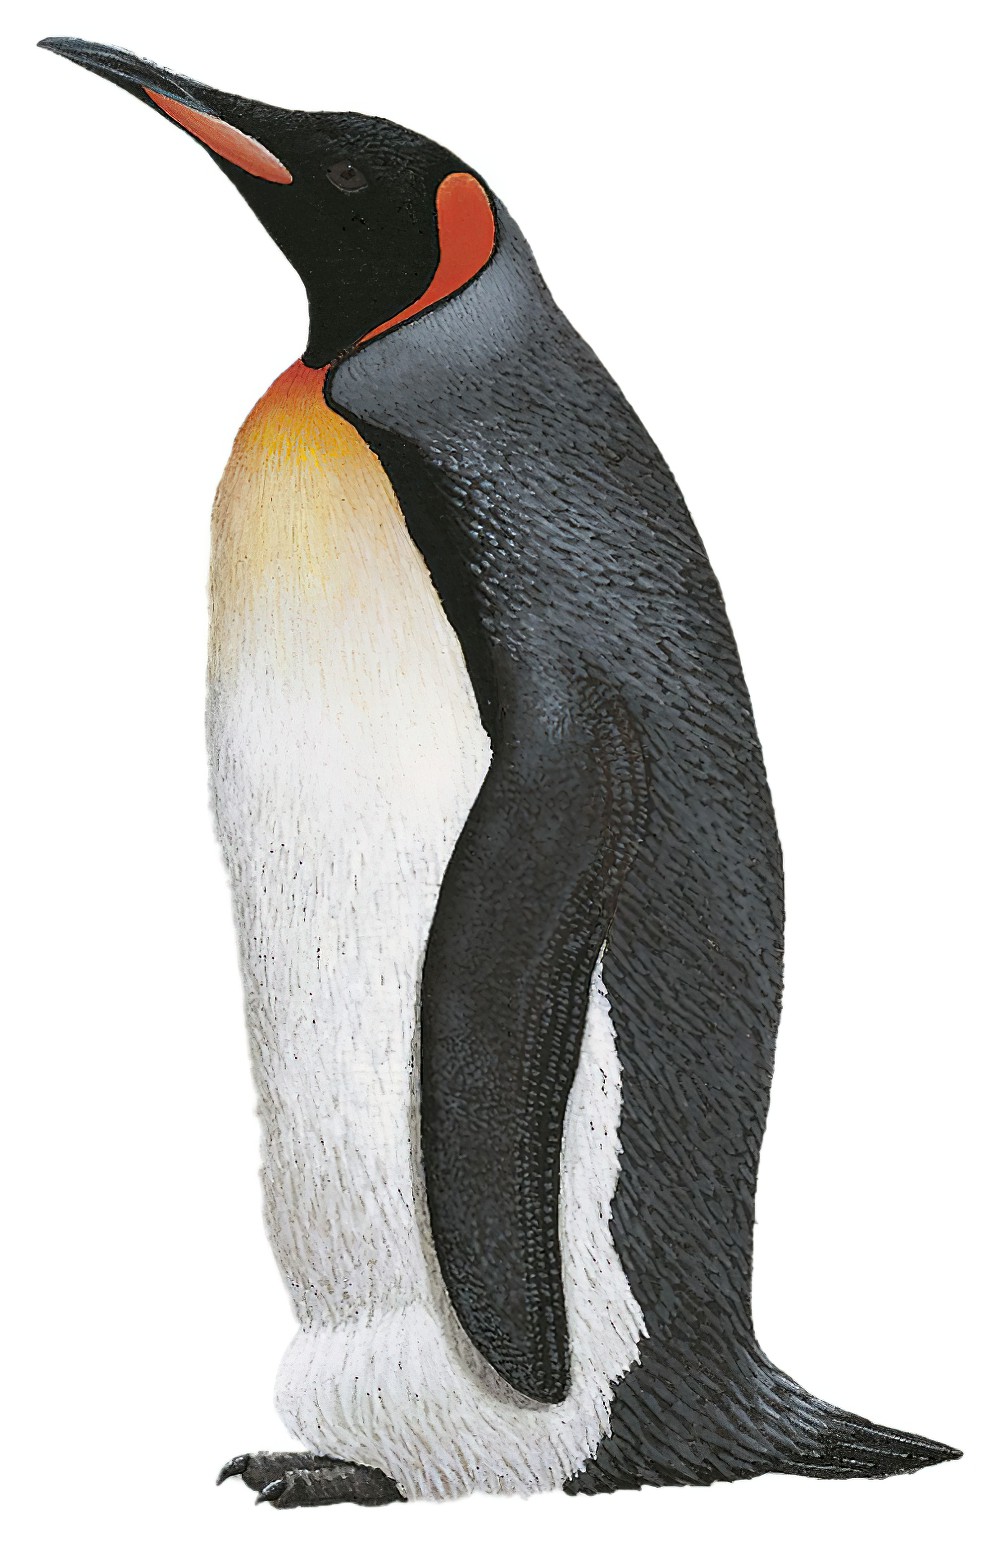 King Penguin / Aptenodytes patagonicus